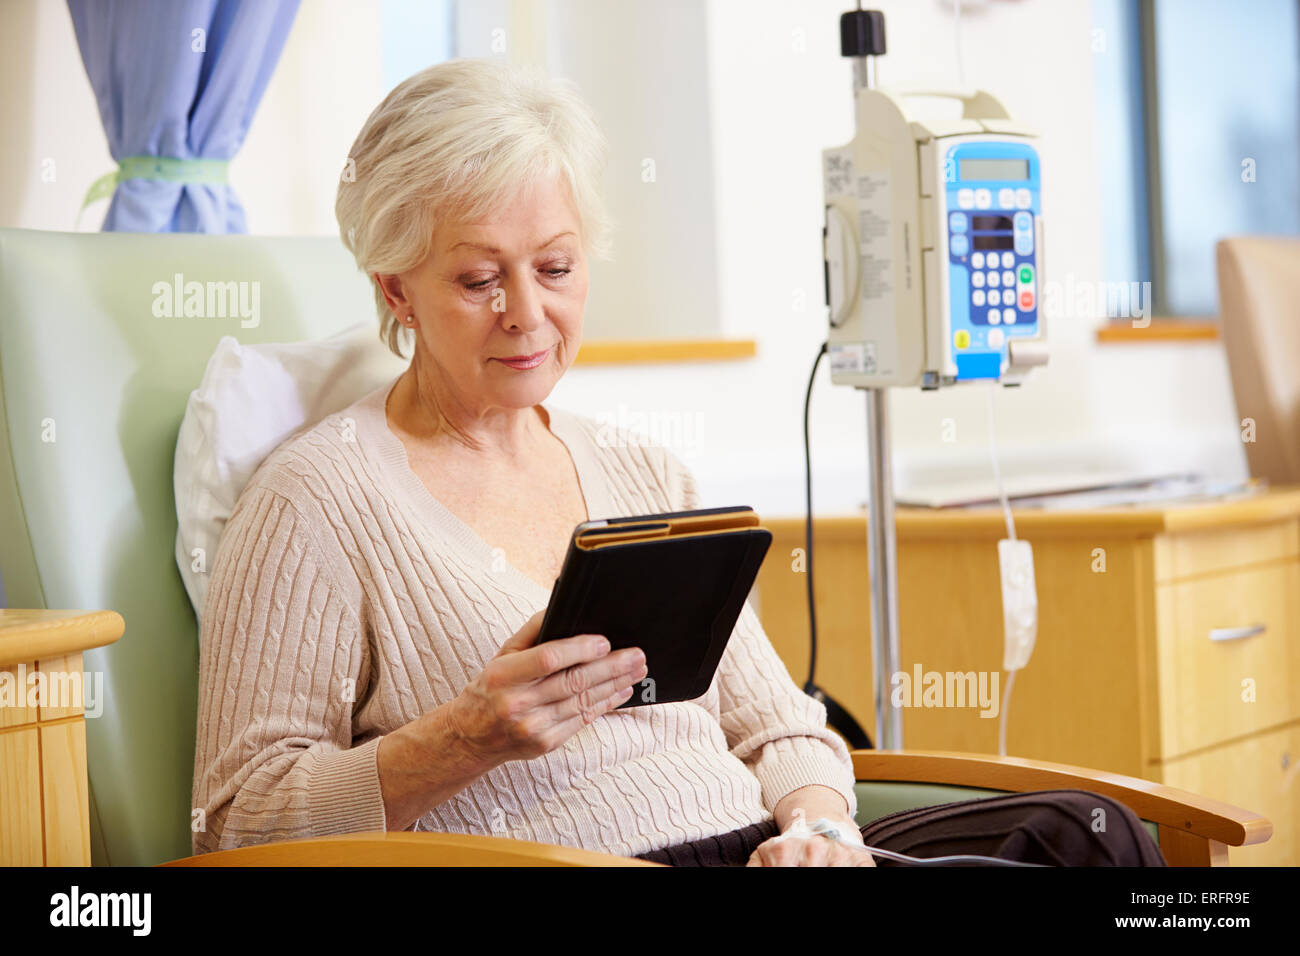 En chimiothérapie Senior Woman with Digital Tablet Banque D'Images